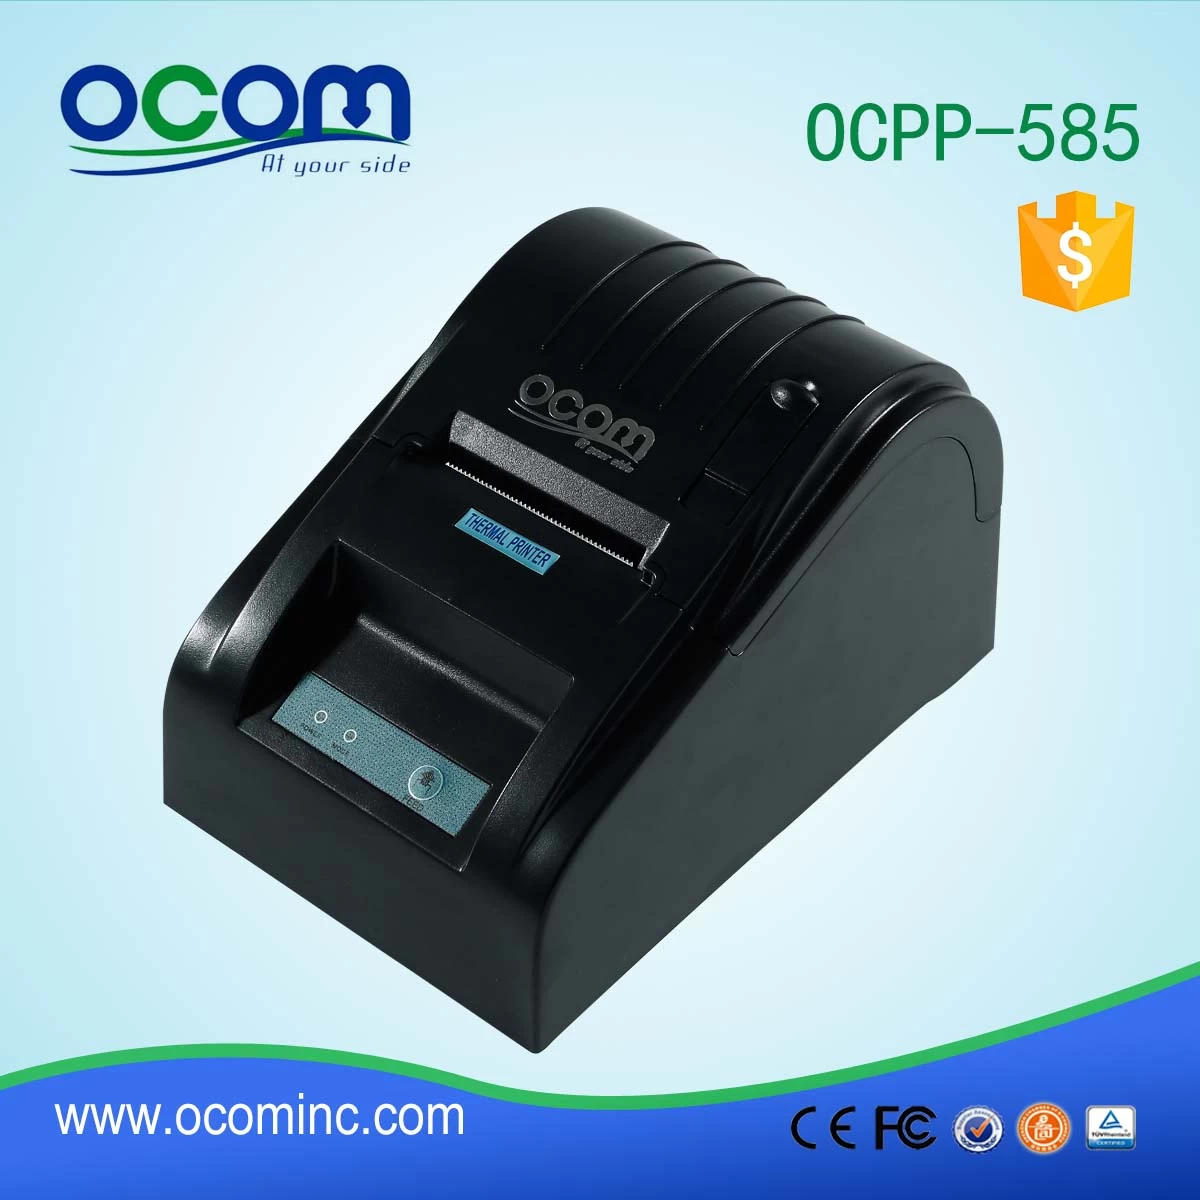 Smartphone pos bluetooth printer OCPP-585